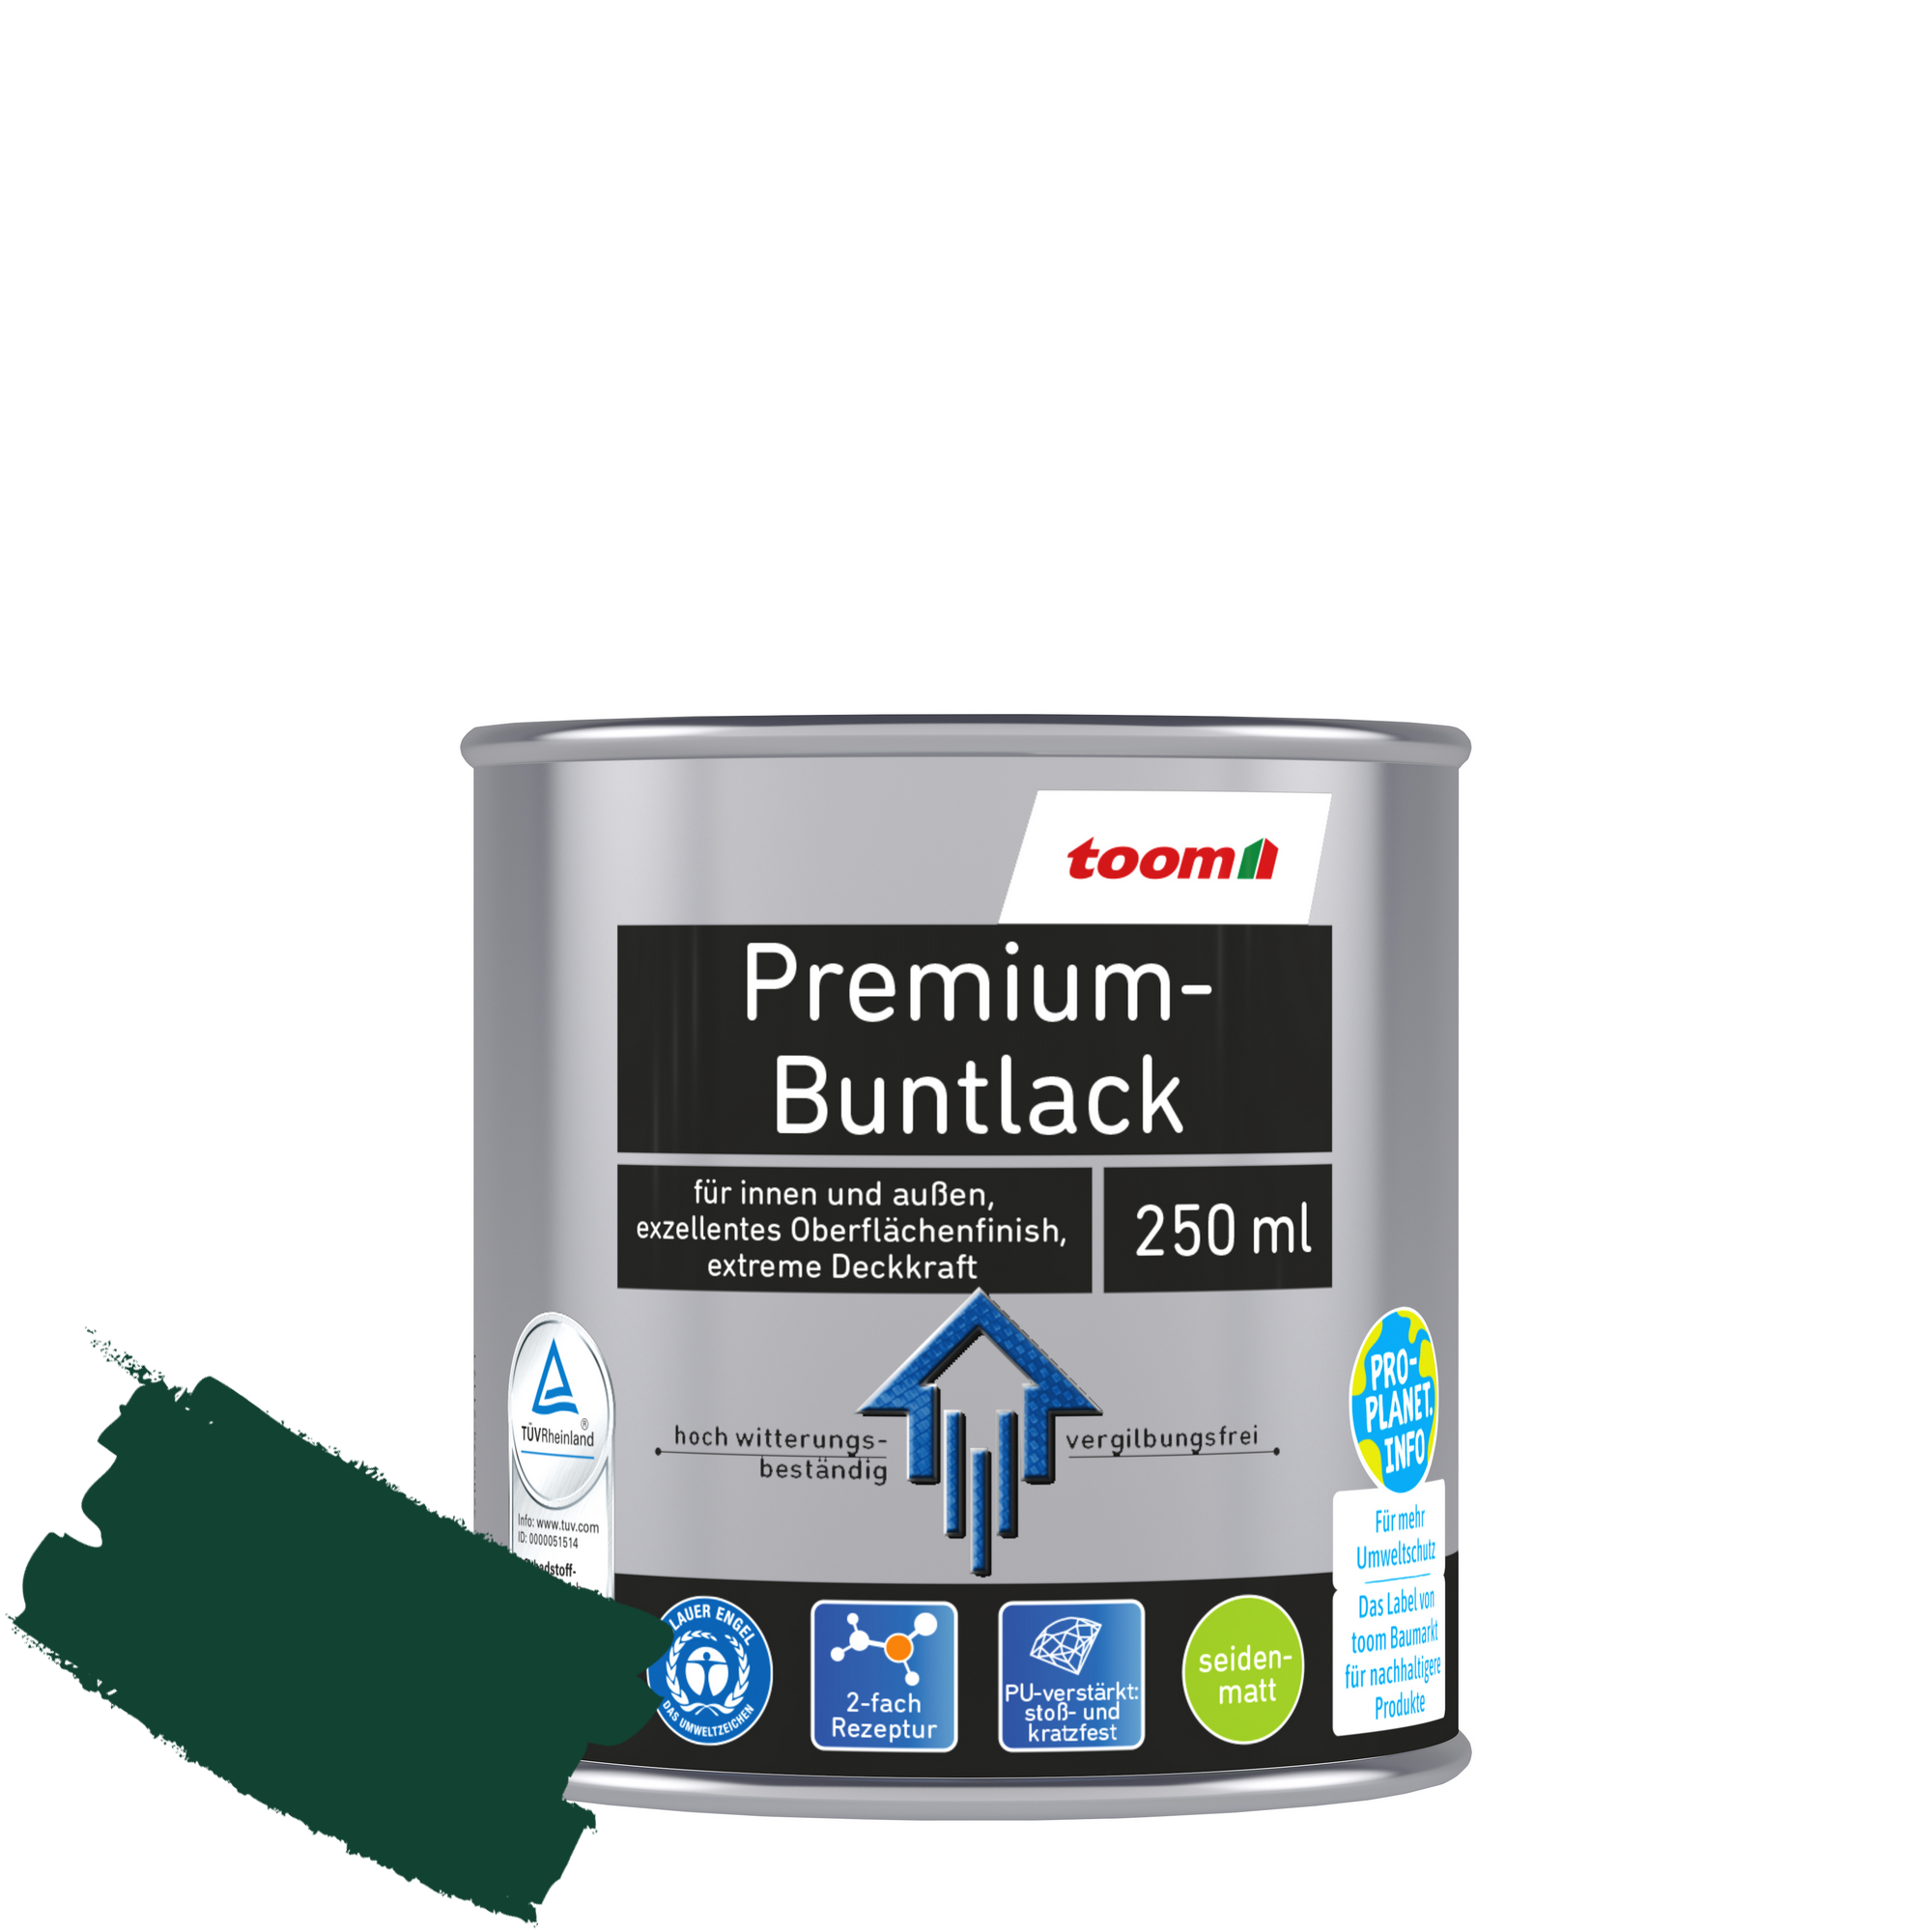 Premium-Buntlack moosgrün seidenmatt 250 ml + product picture